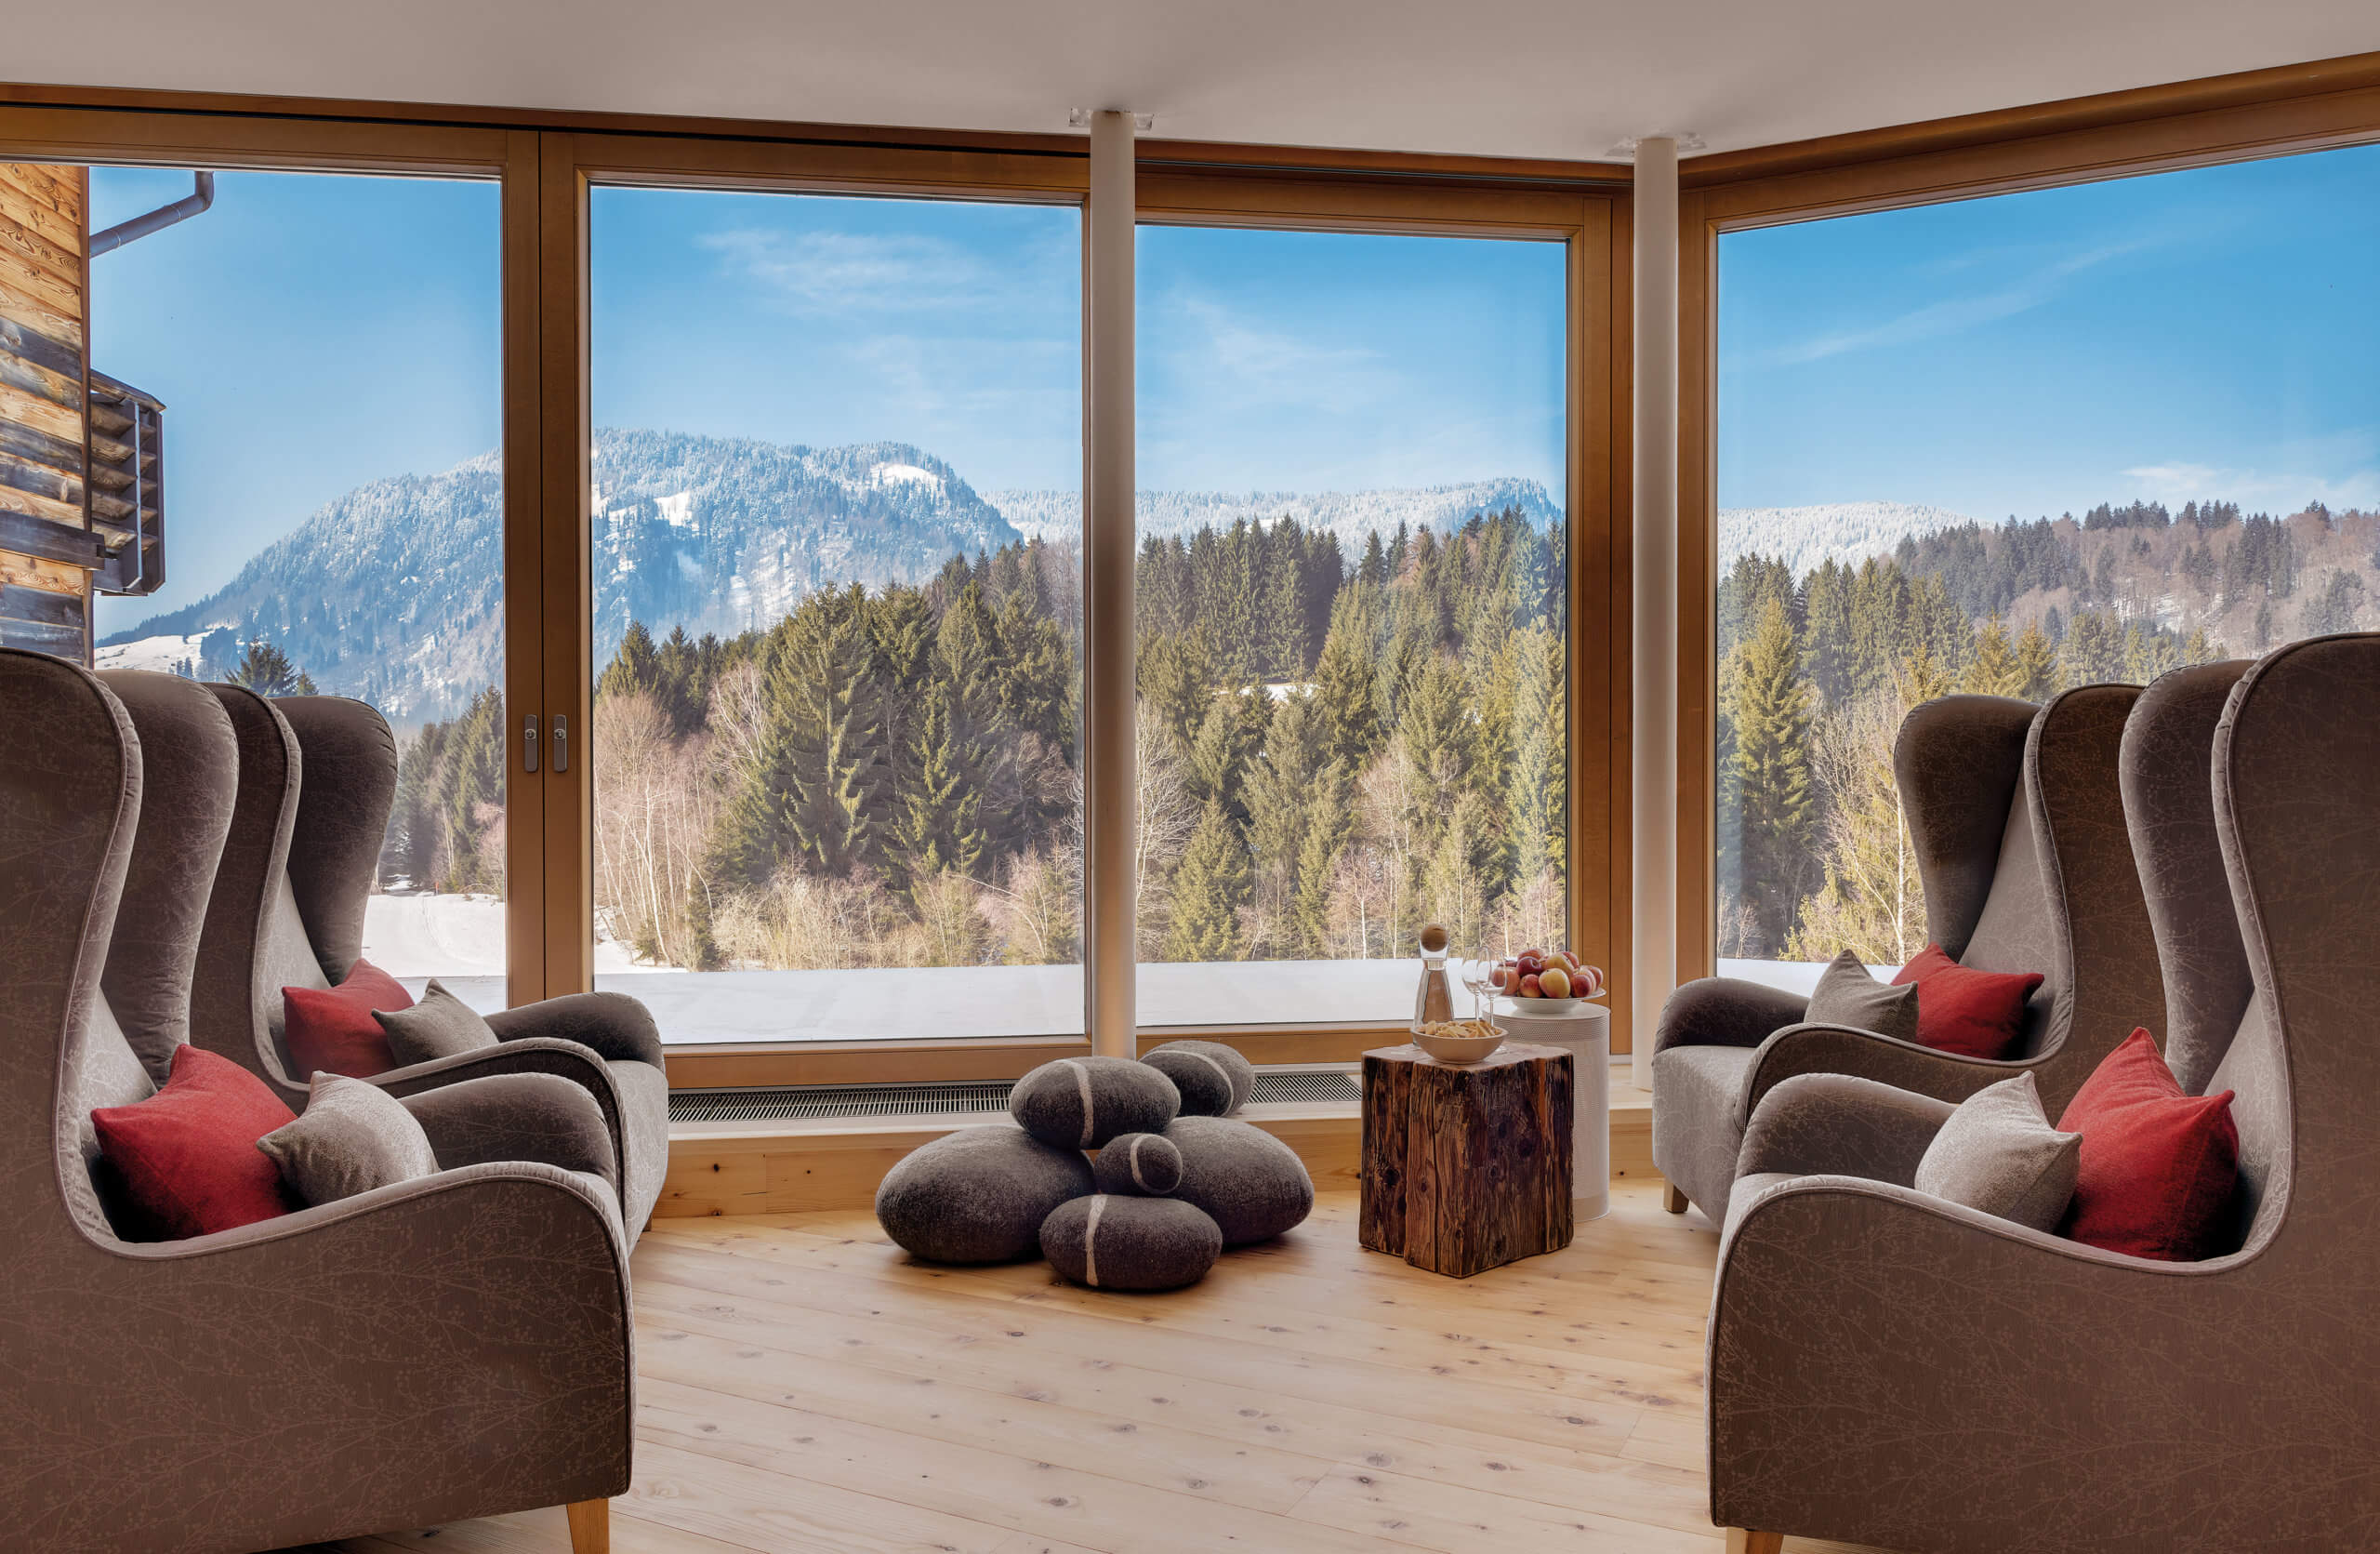 Das Bild zeigt die Panorama-Aussicht aus dem Wellnessbereich im Hotel Oberstdorf im Allgäu.